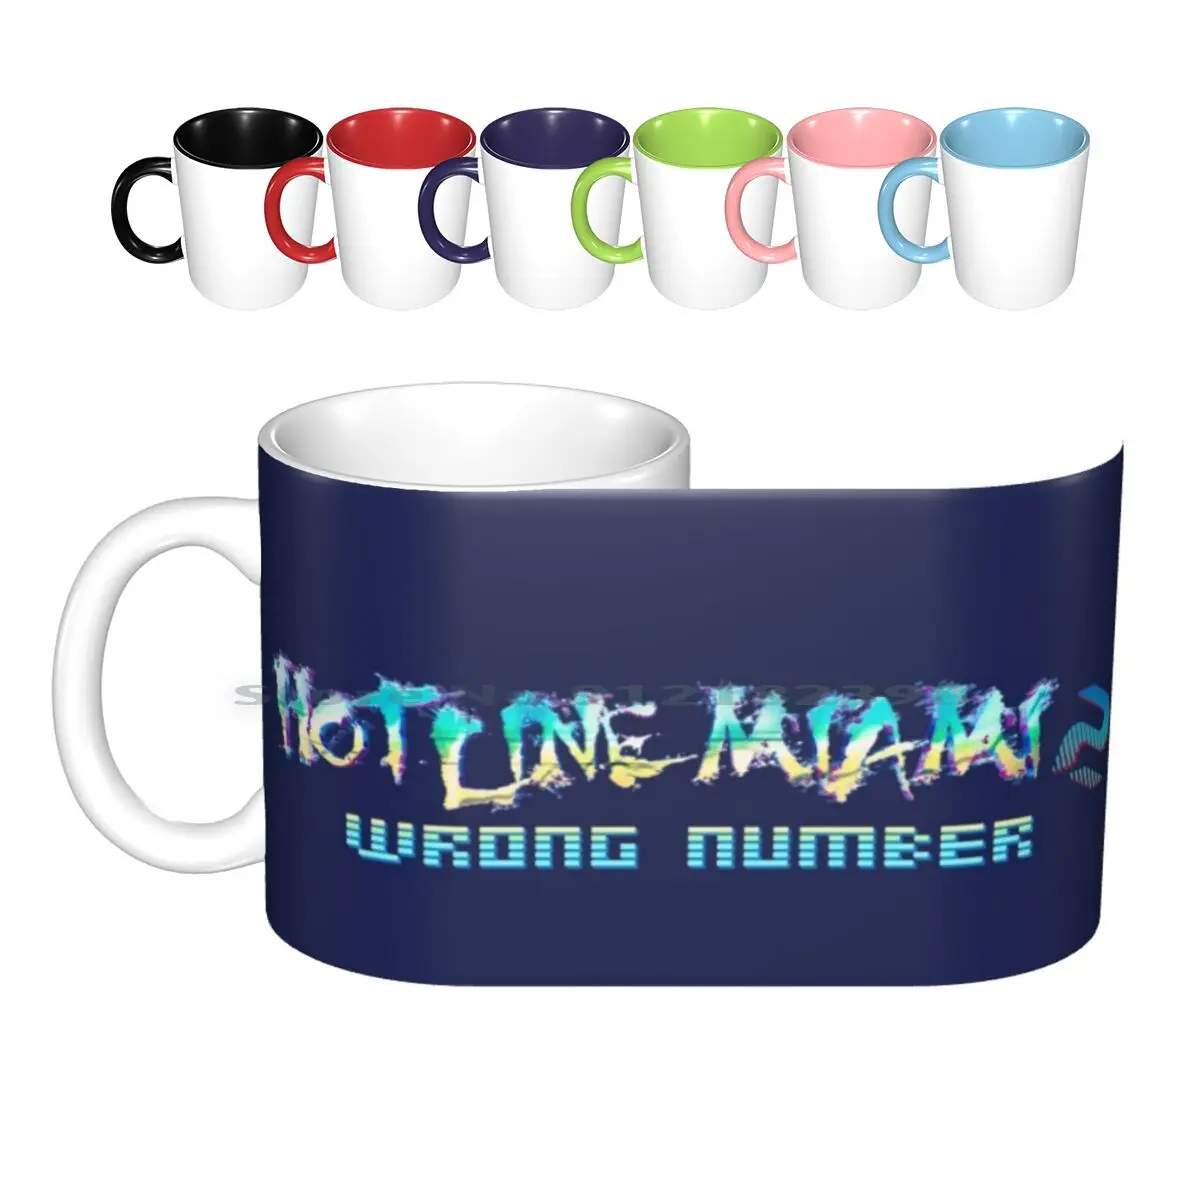 

Горячая линия Майами 2, иллюстрация логотипа фаната, керамические кружки, кофейные чашки, кружка для молока, чая Майами, Горячая линия Майами...